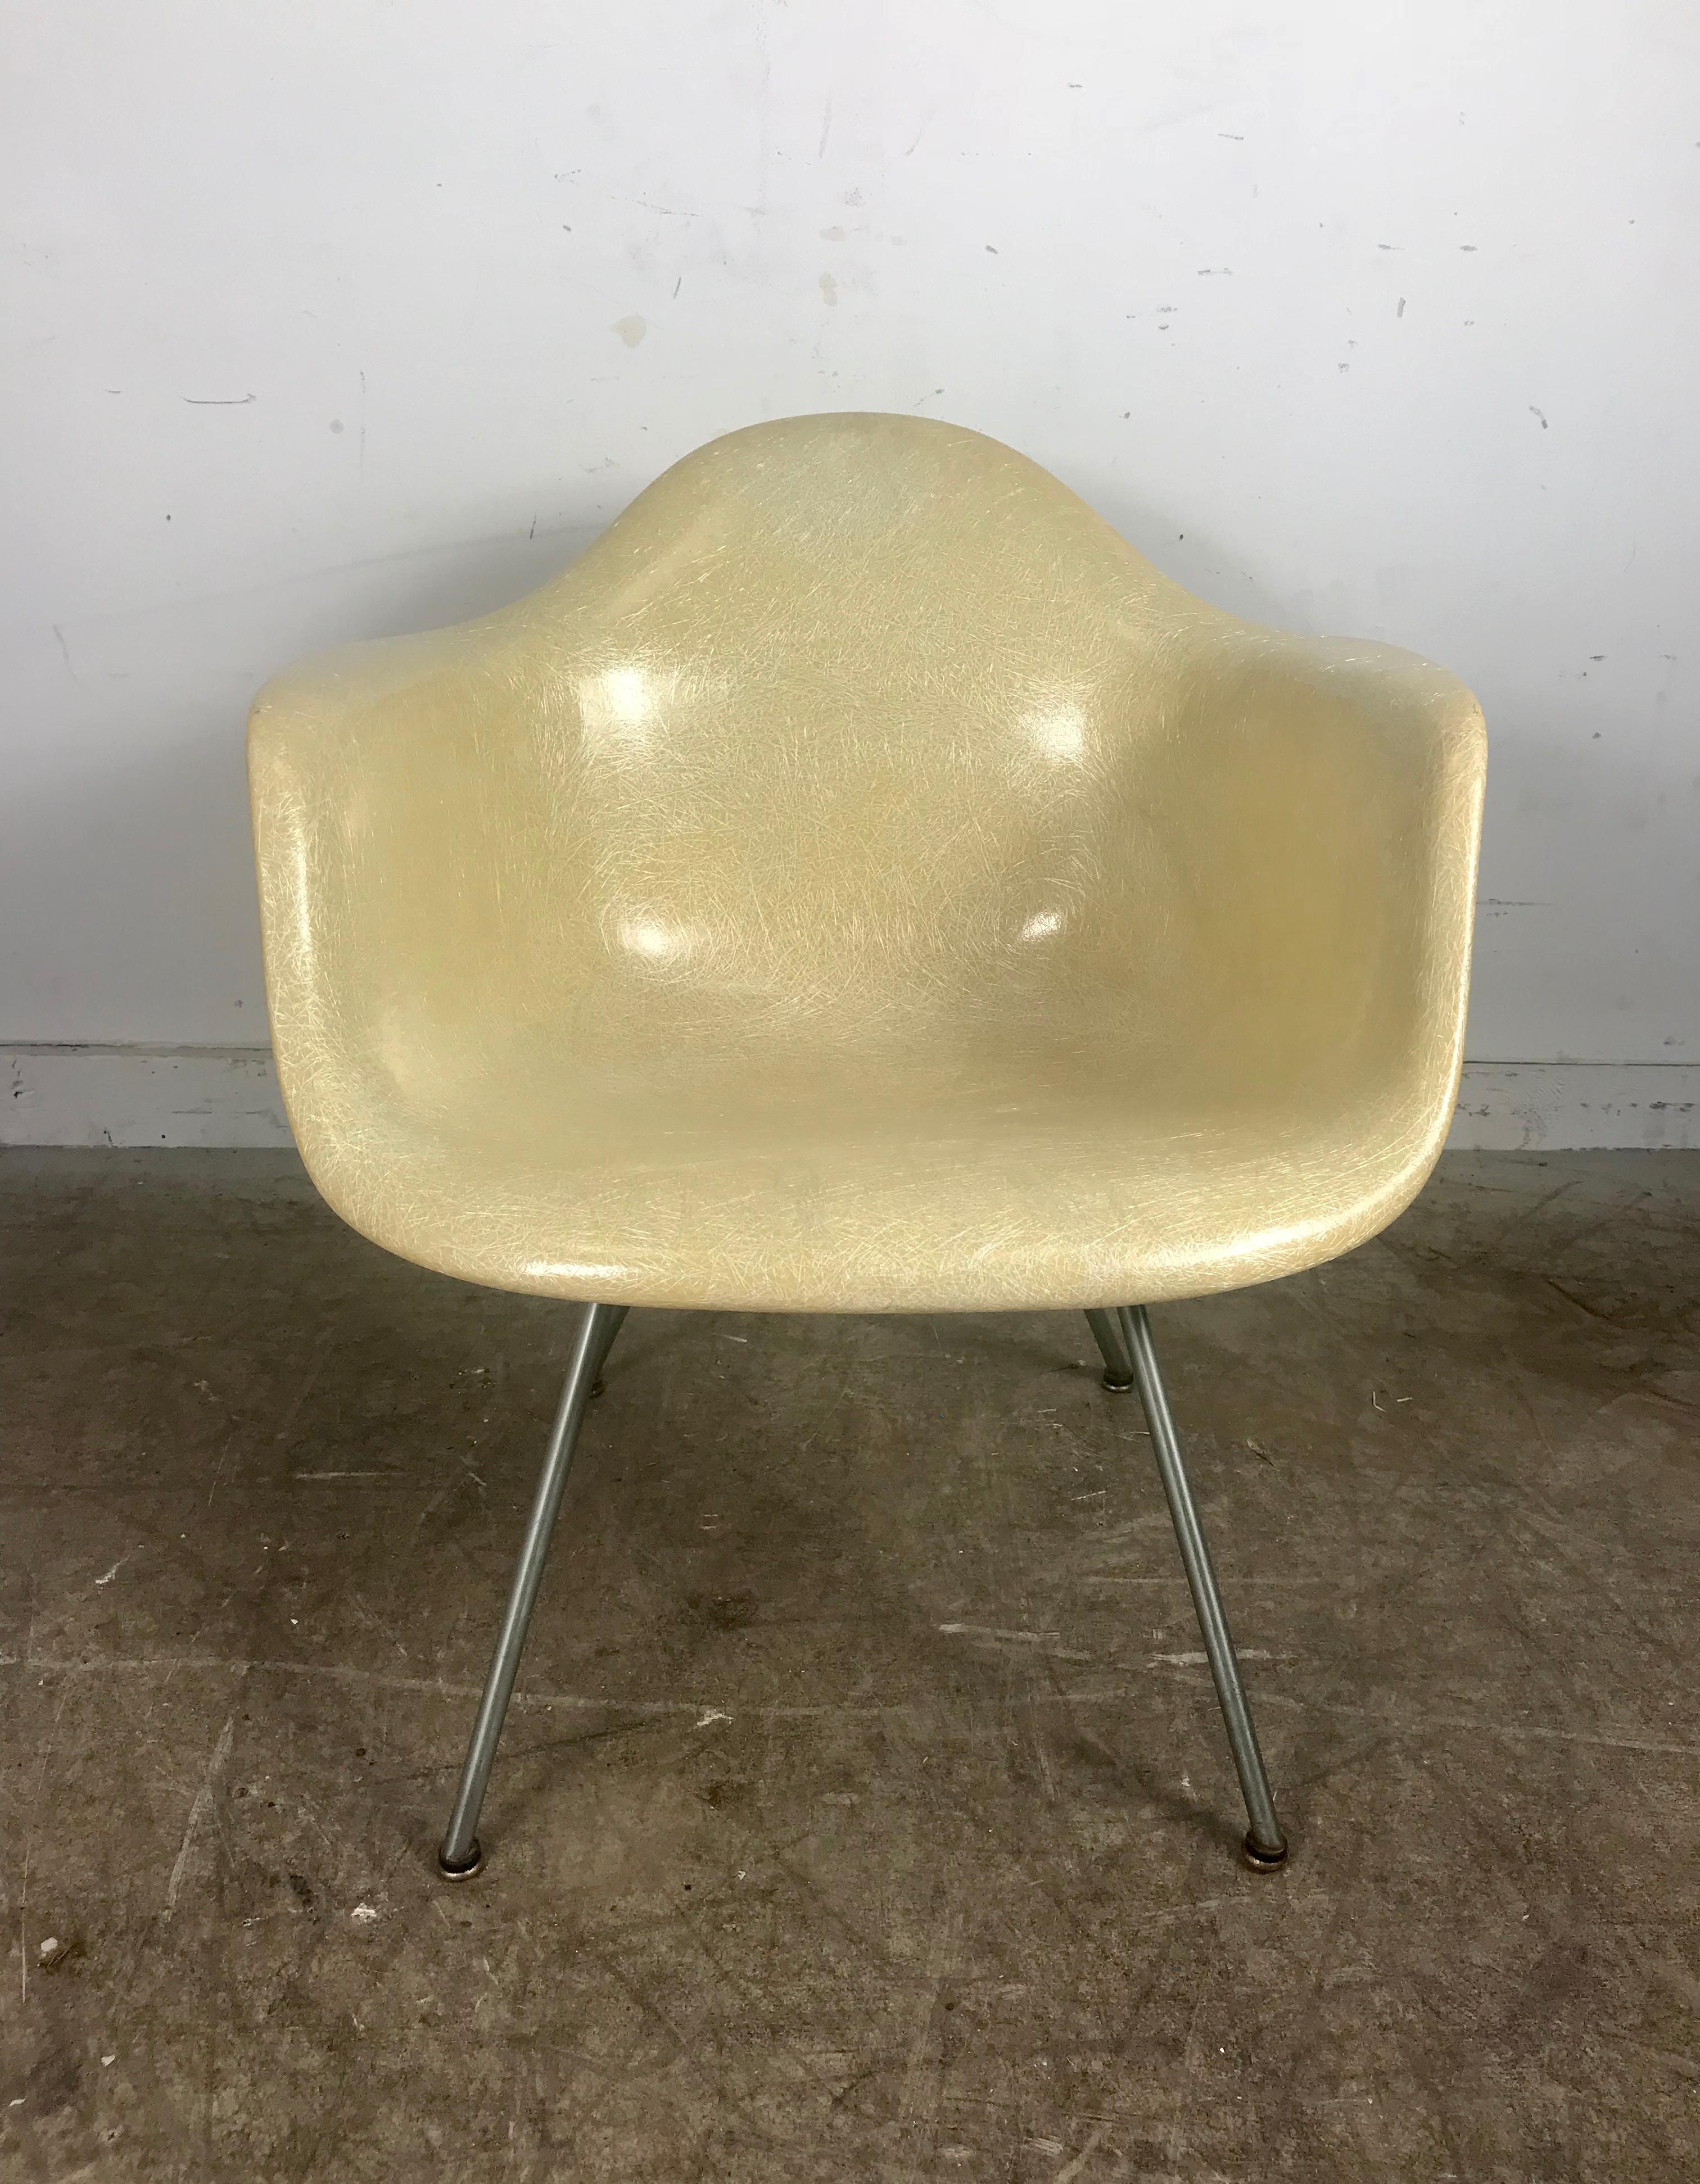 Frühe 2. Generation X base translucent arm shell lounge chair von Charles Eames für Herman Miller. Erstaunlich Zustand, mit niedrigen Aluminium-X-Basis, große Kuppeln der Stille Schock Mounts. Behält alle vier frühen Fußgleiter, durchsichtige